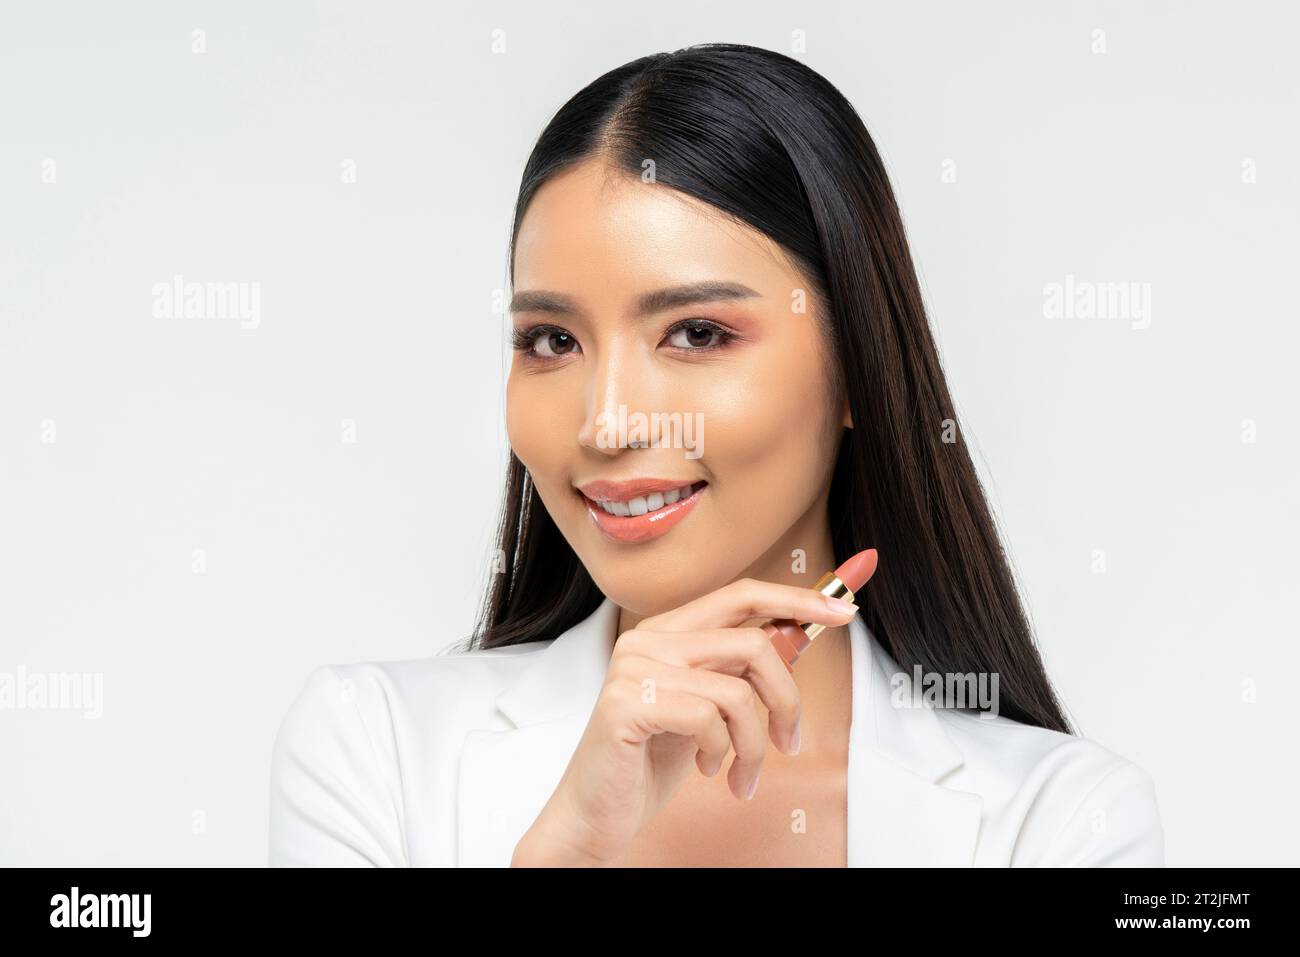 Freundliche junge asiatische Frau mit Lippenstift lächelt und während des Make-up-Auftrags in die Kamera blickt vor weißem Hintergrund Stockfoto